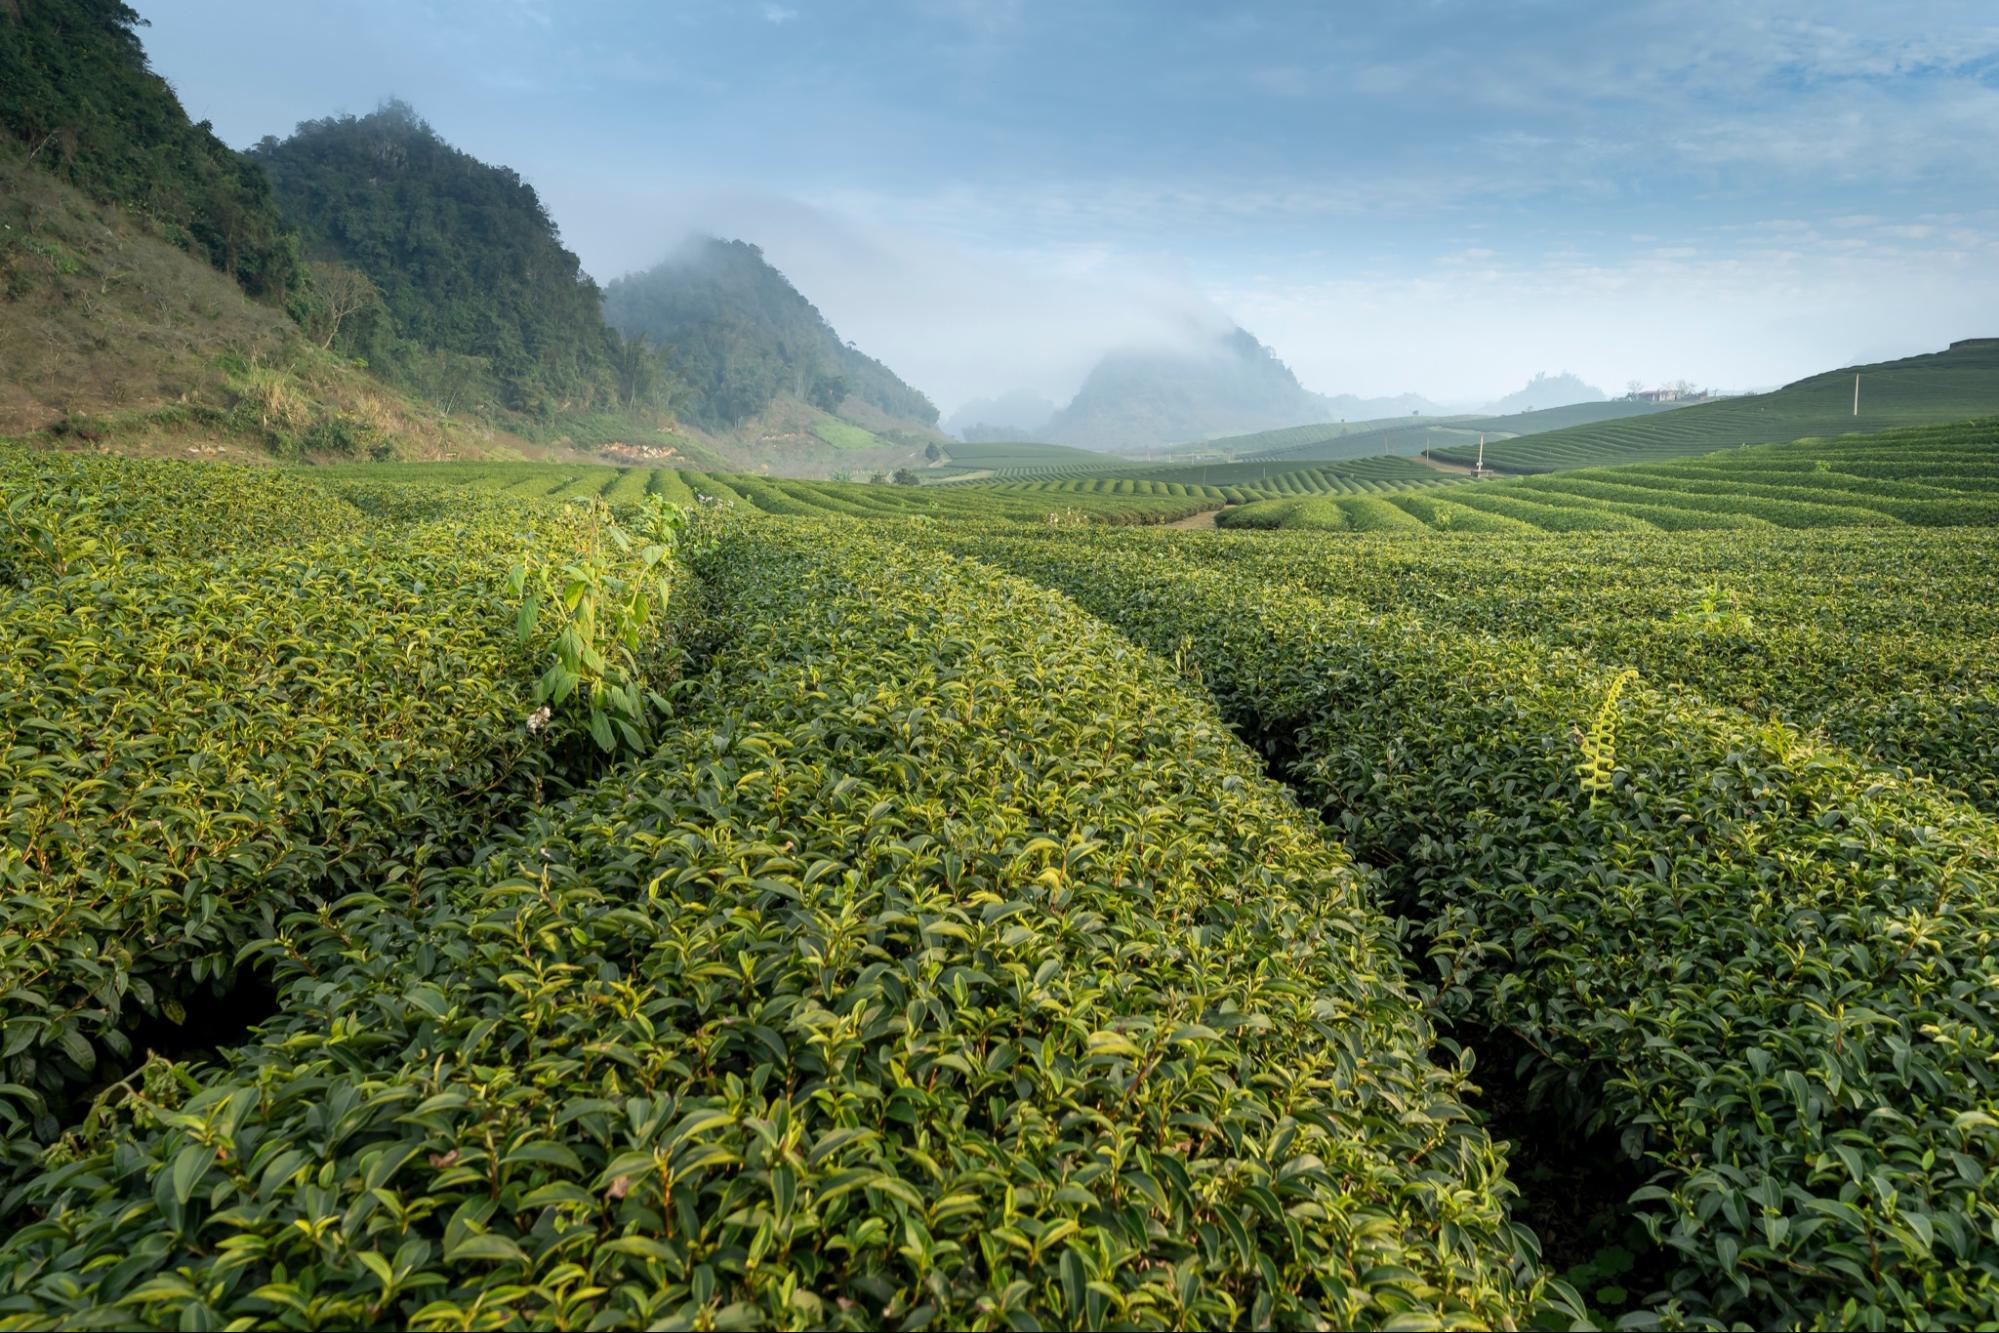 The mountain tea garden indicates the origin of frozen top oolong tea